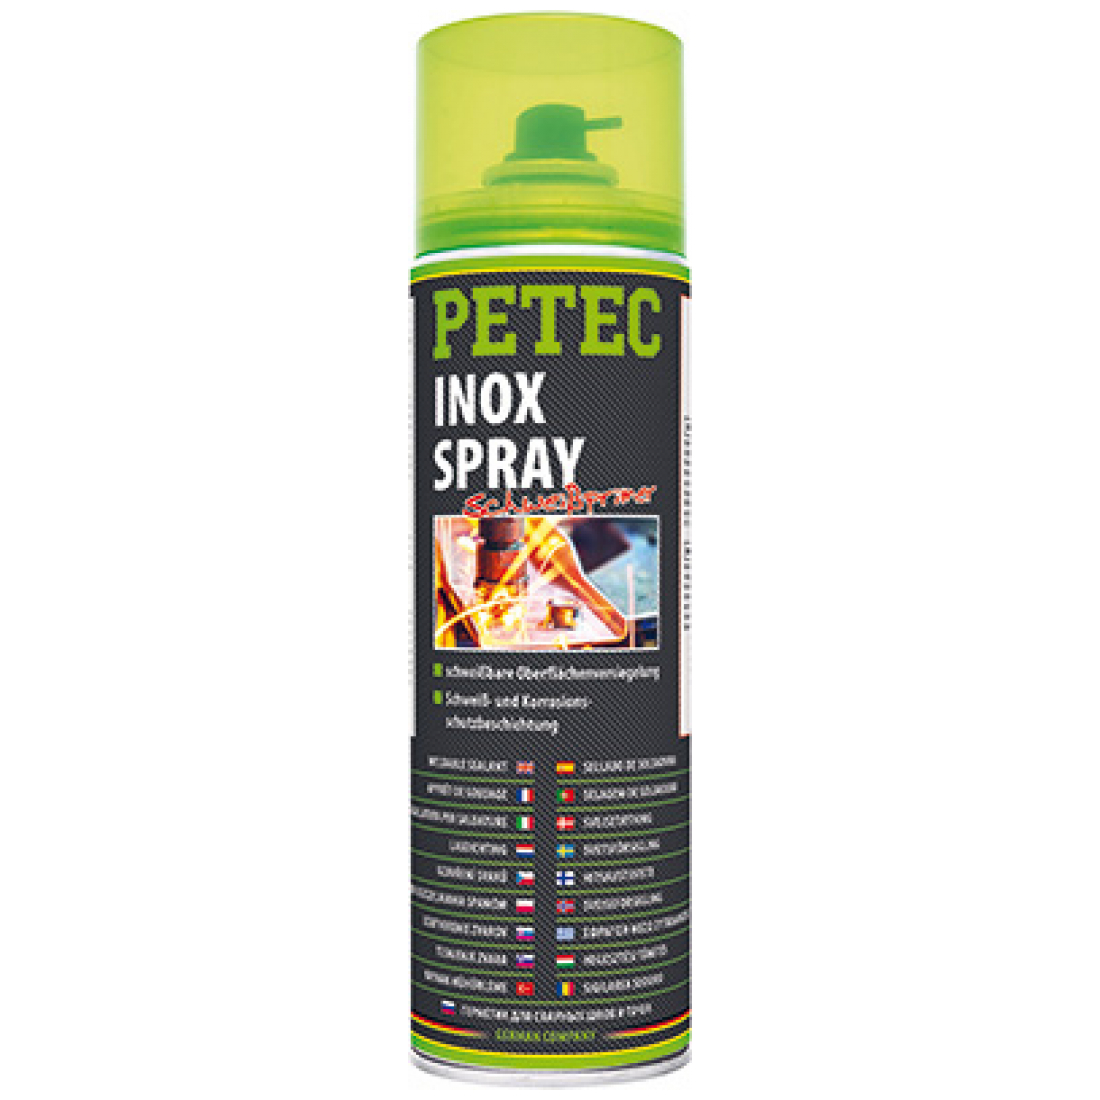 Petec Inox Spray 500ml 70360